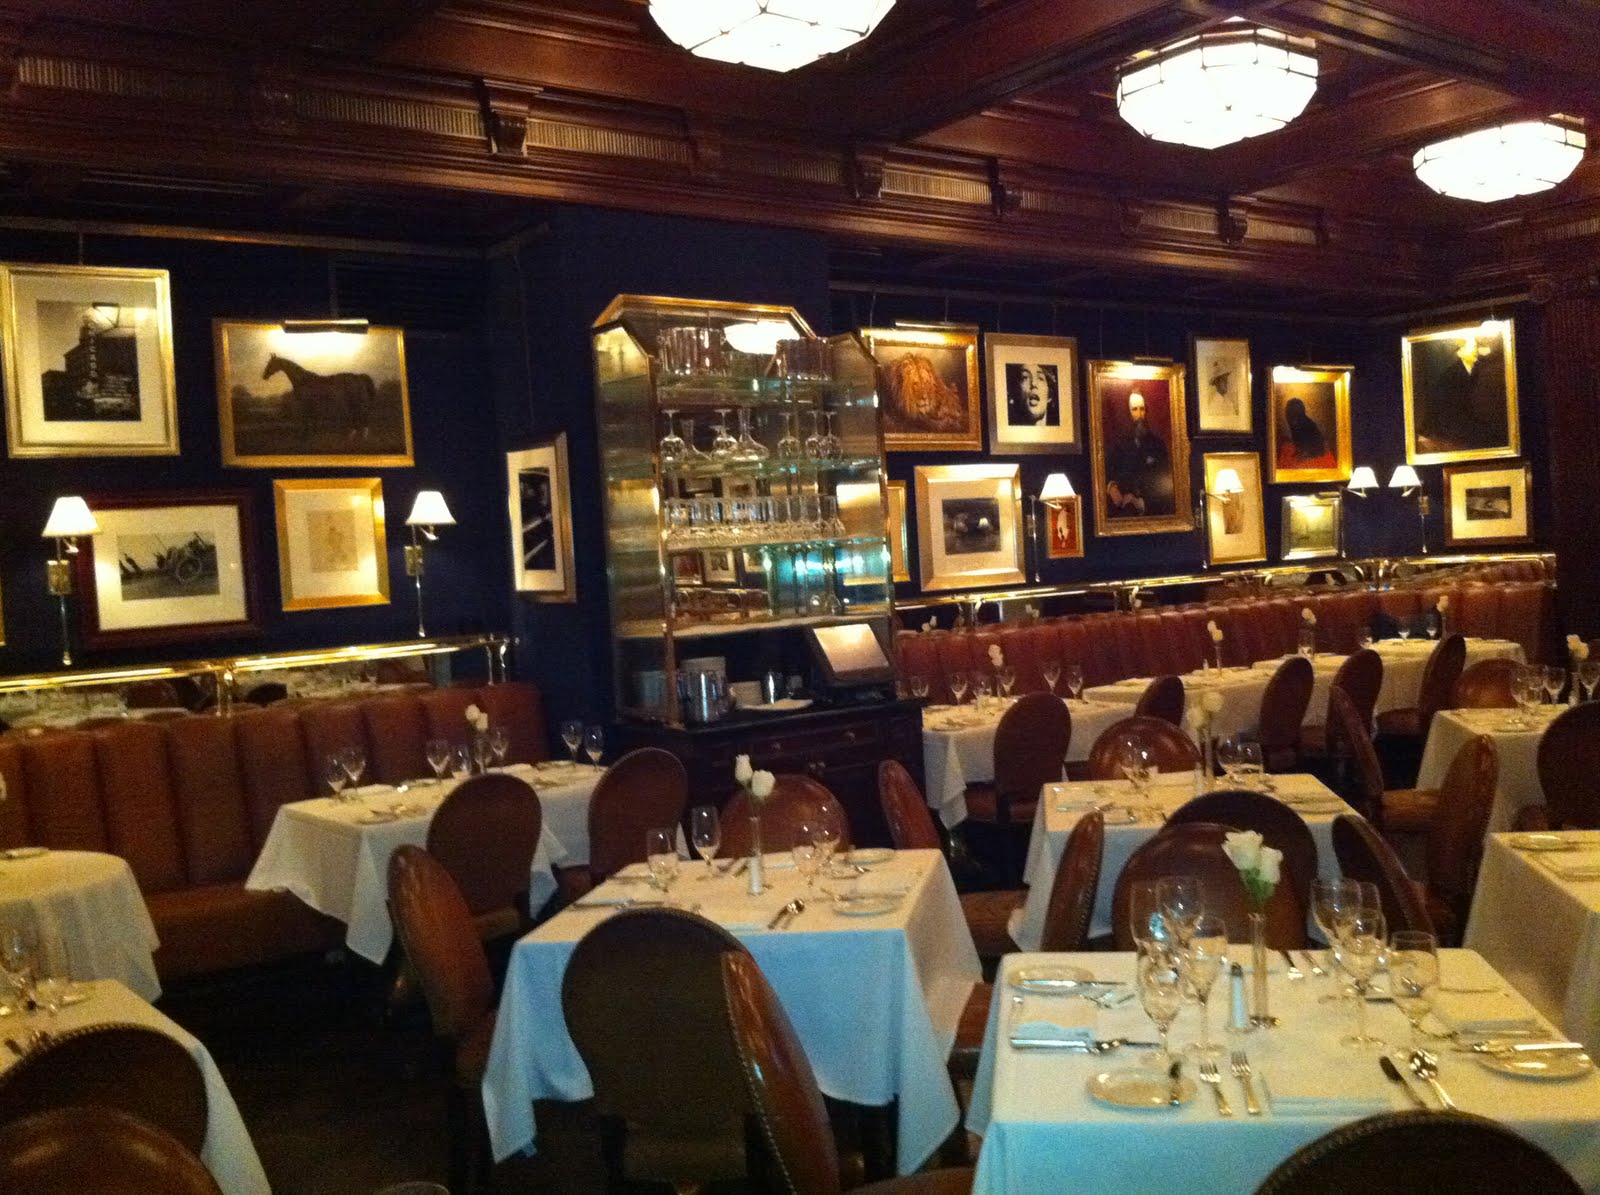 Kiran's Corner: Review of the RL restaurant in Chicago